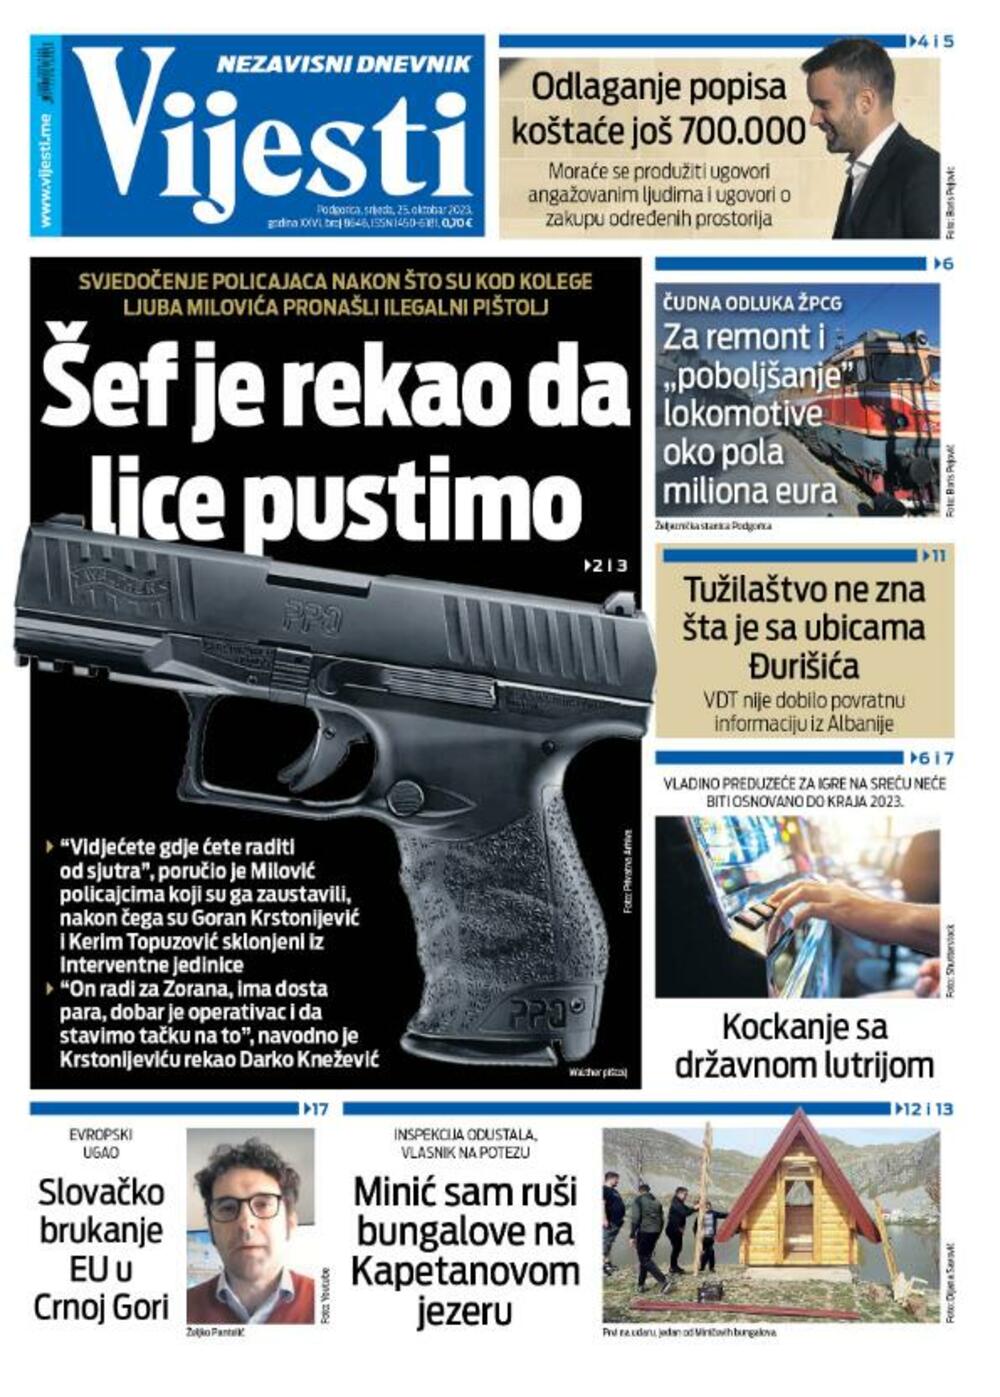 Naslovna strana "Vijesti" za 25. oktobar 2023., Foto: Vijesti